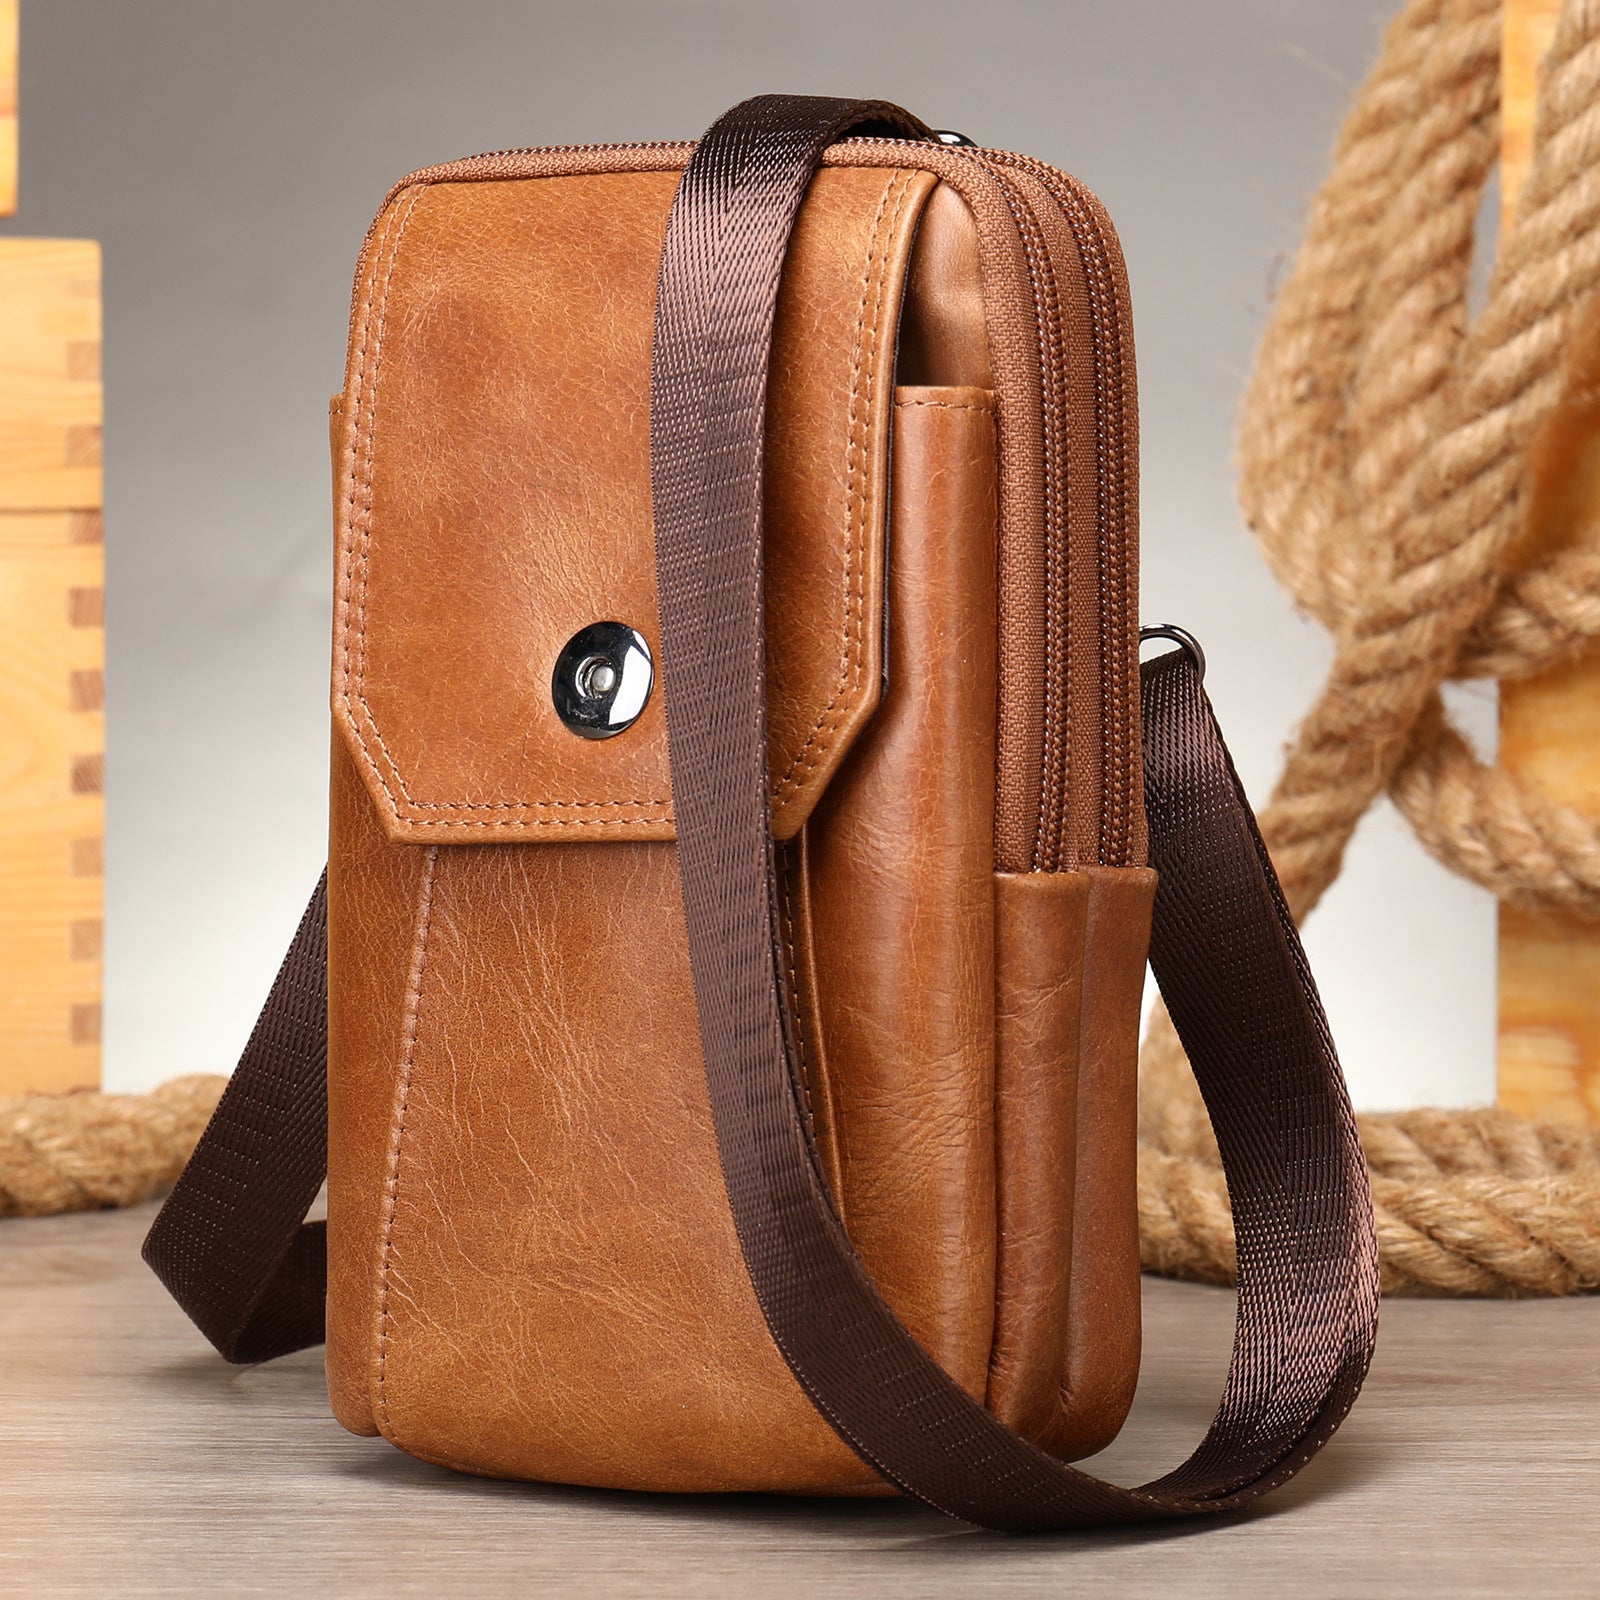 Men's Leather Casual One-shoulder Messenger Bag